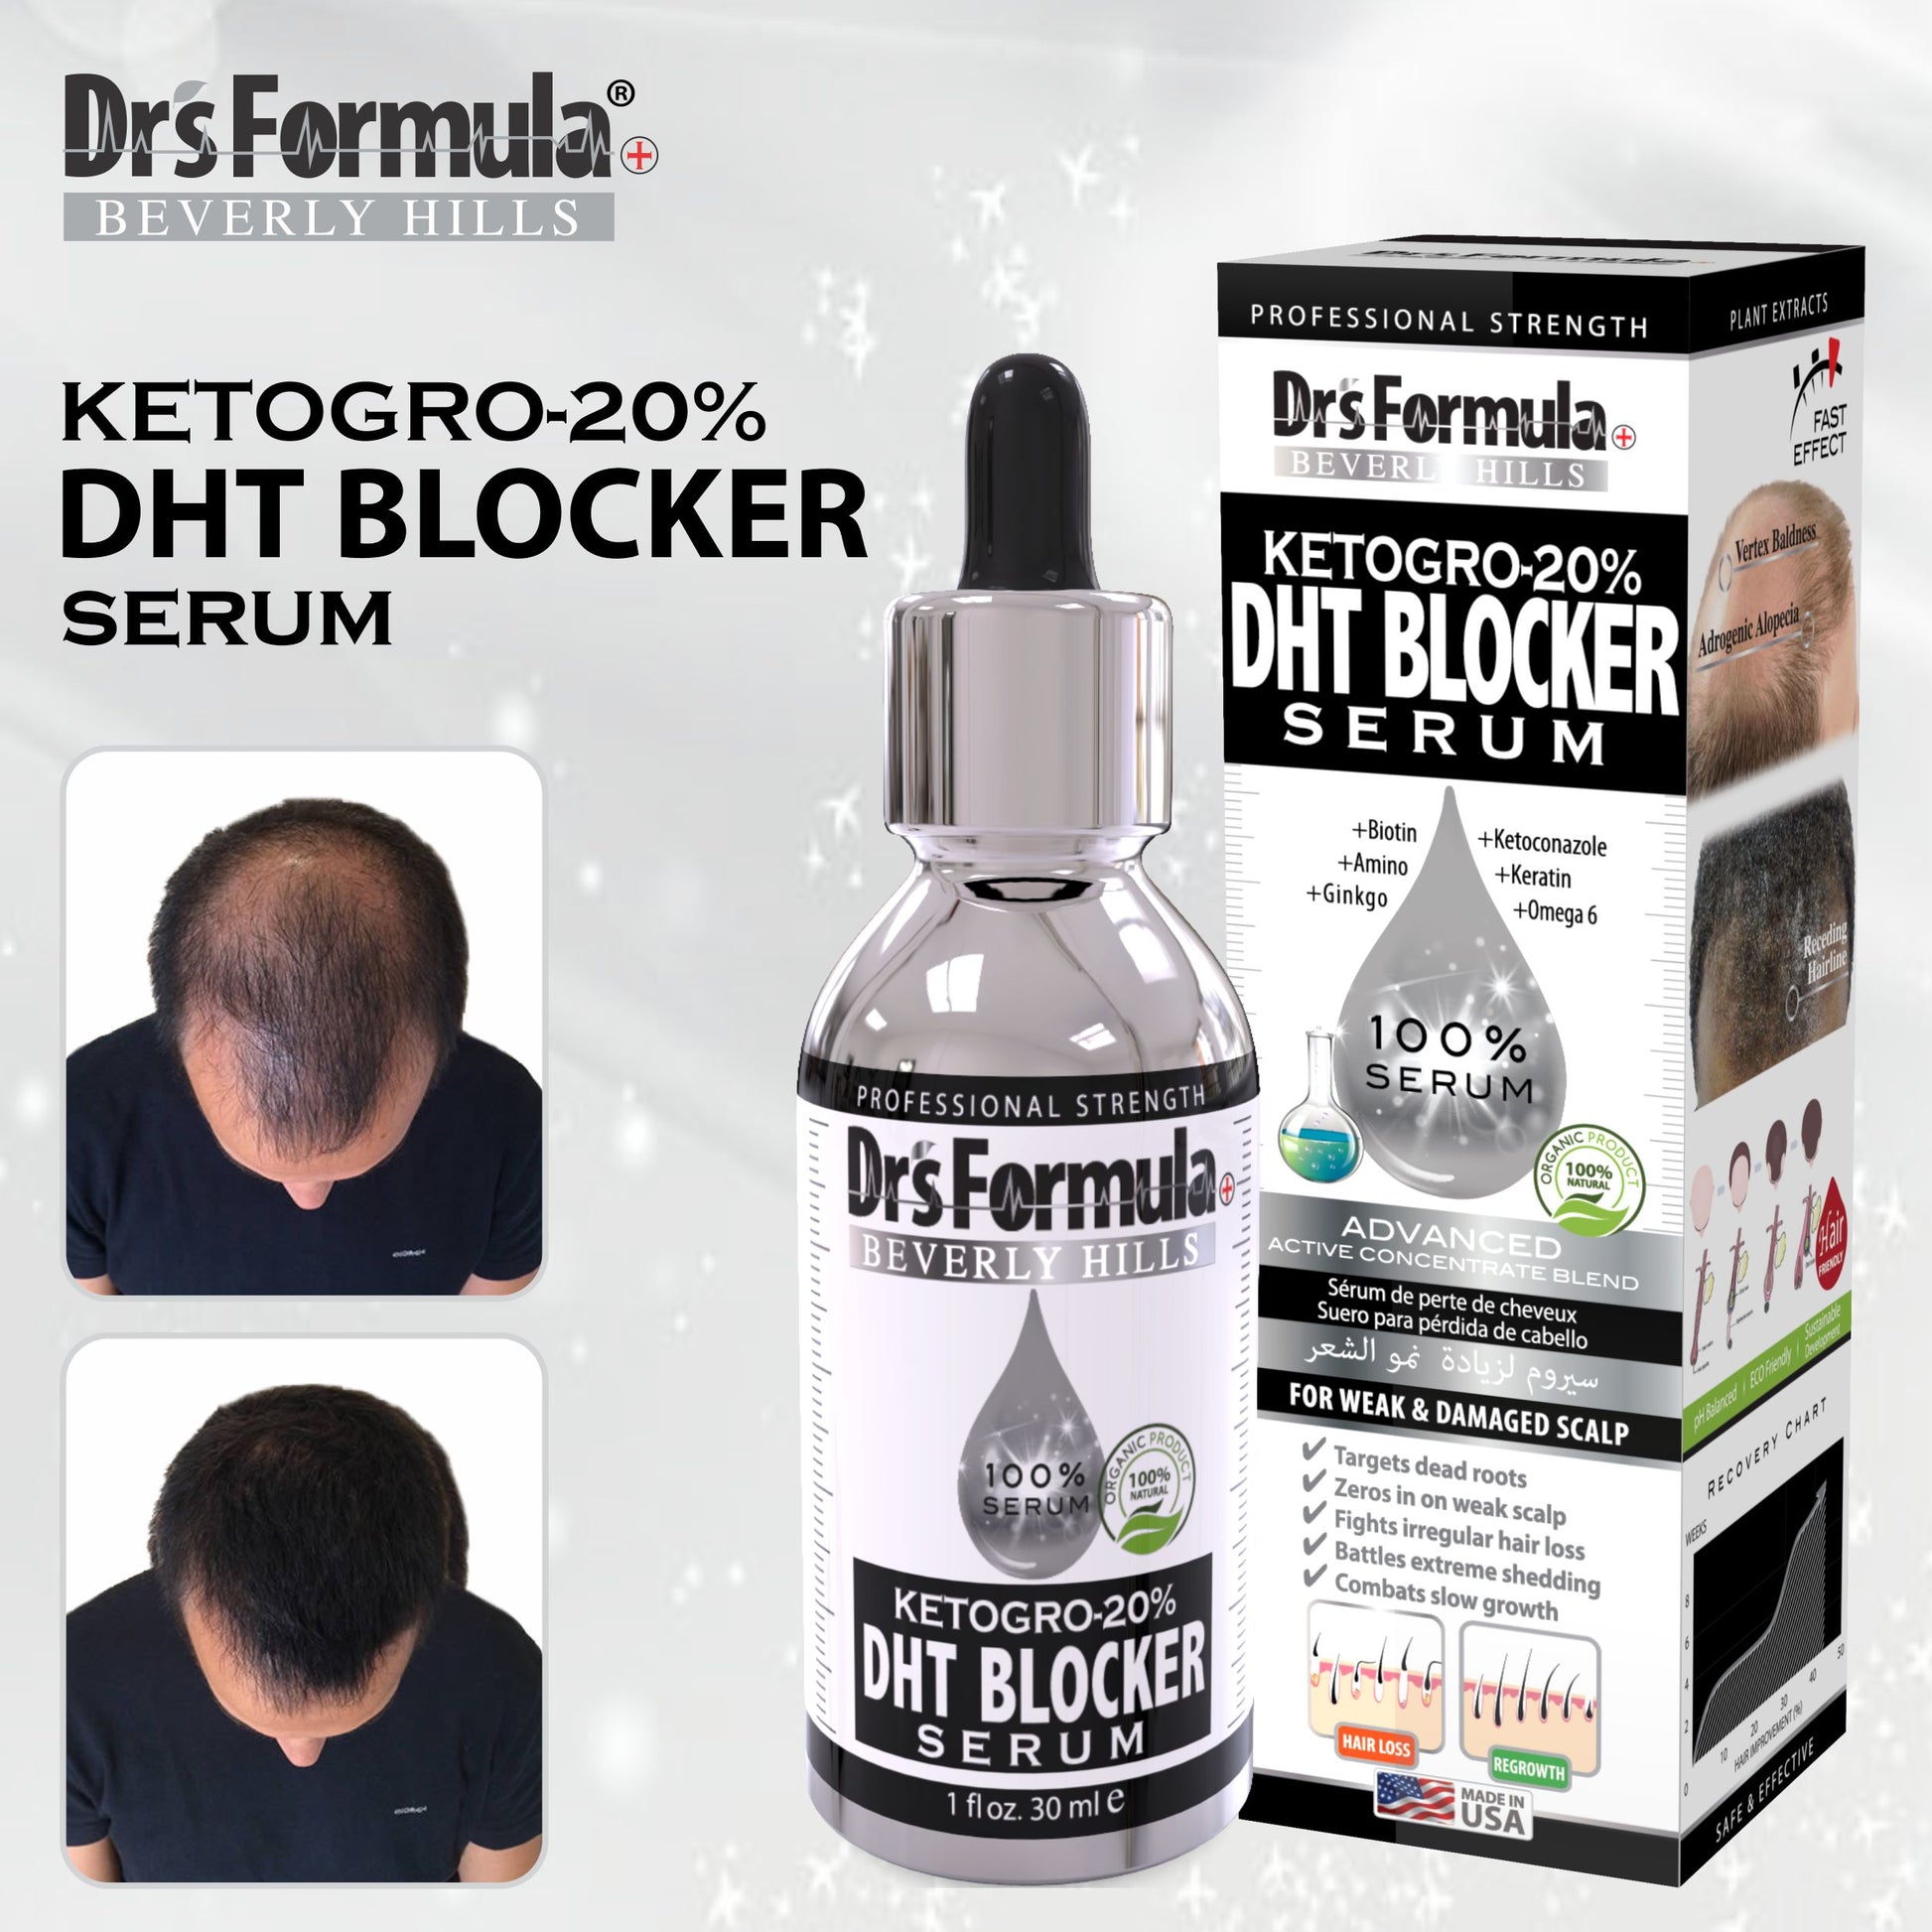 Ketogro-20% DHT Blocker Serum